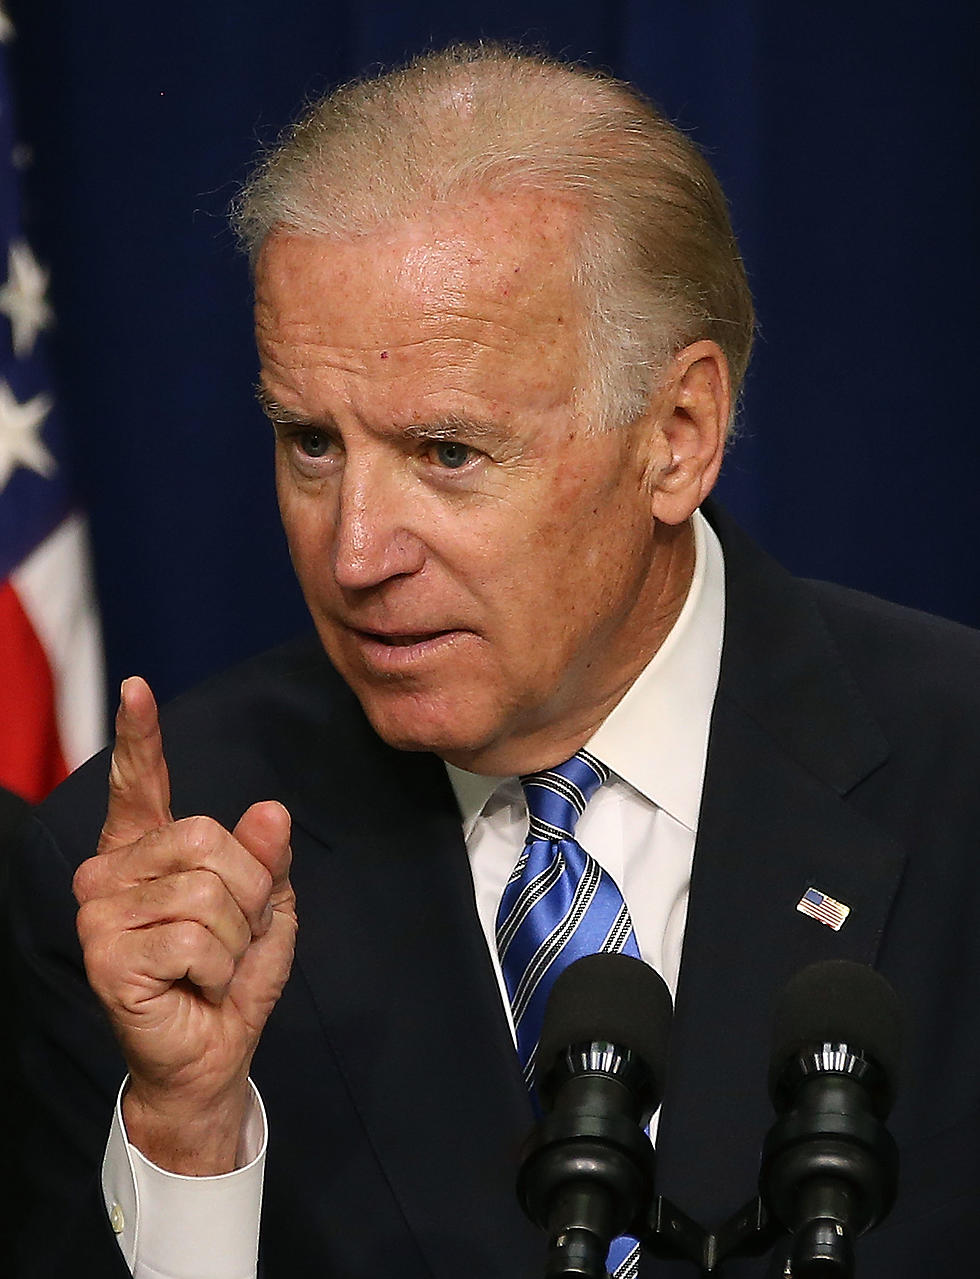 Joe Biden Pushes Gun Control Again, This Time With a Whisper — The Rush Limbaugh Blogs